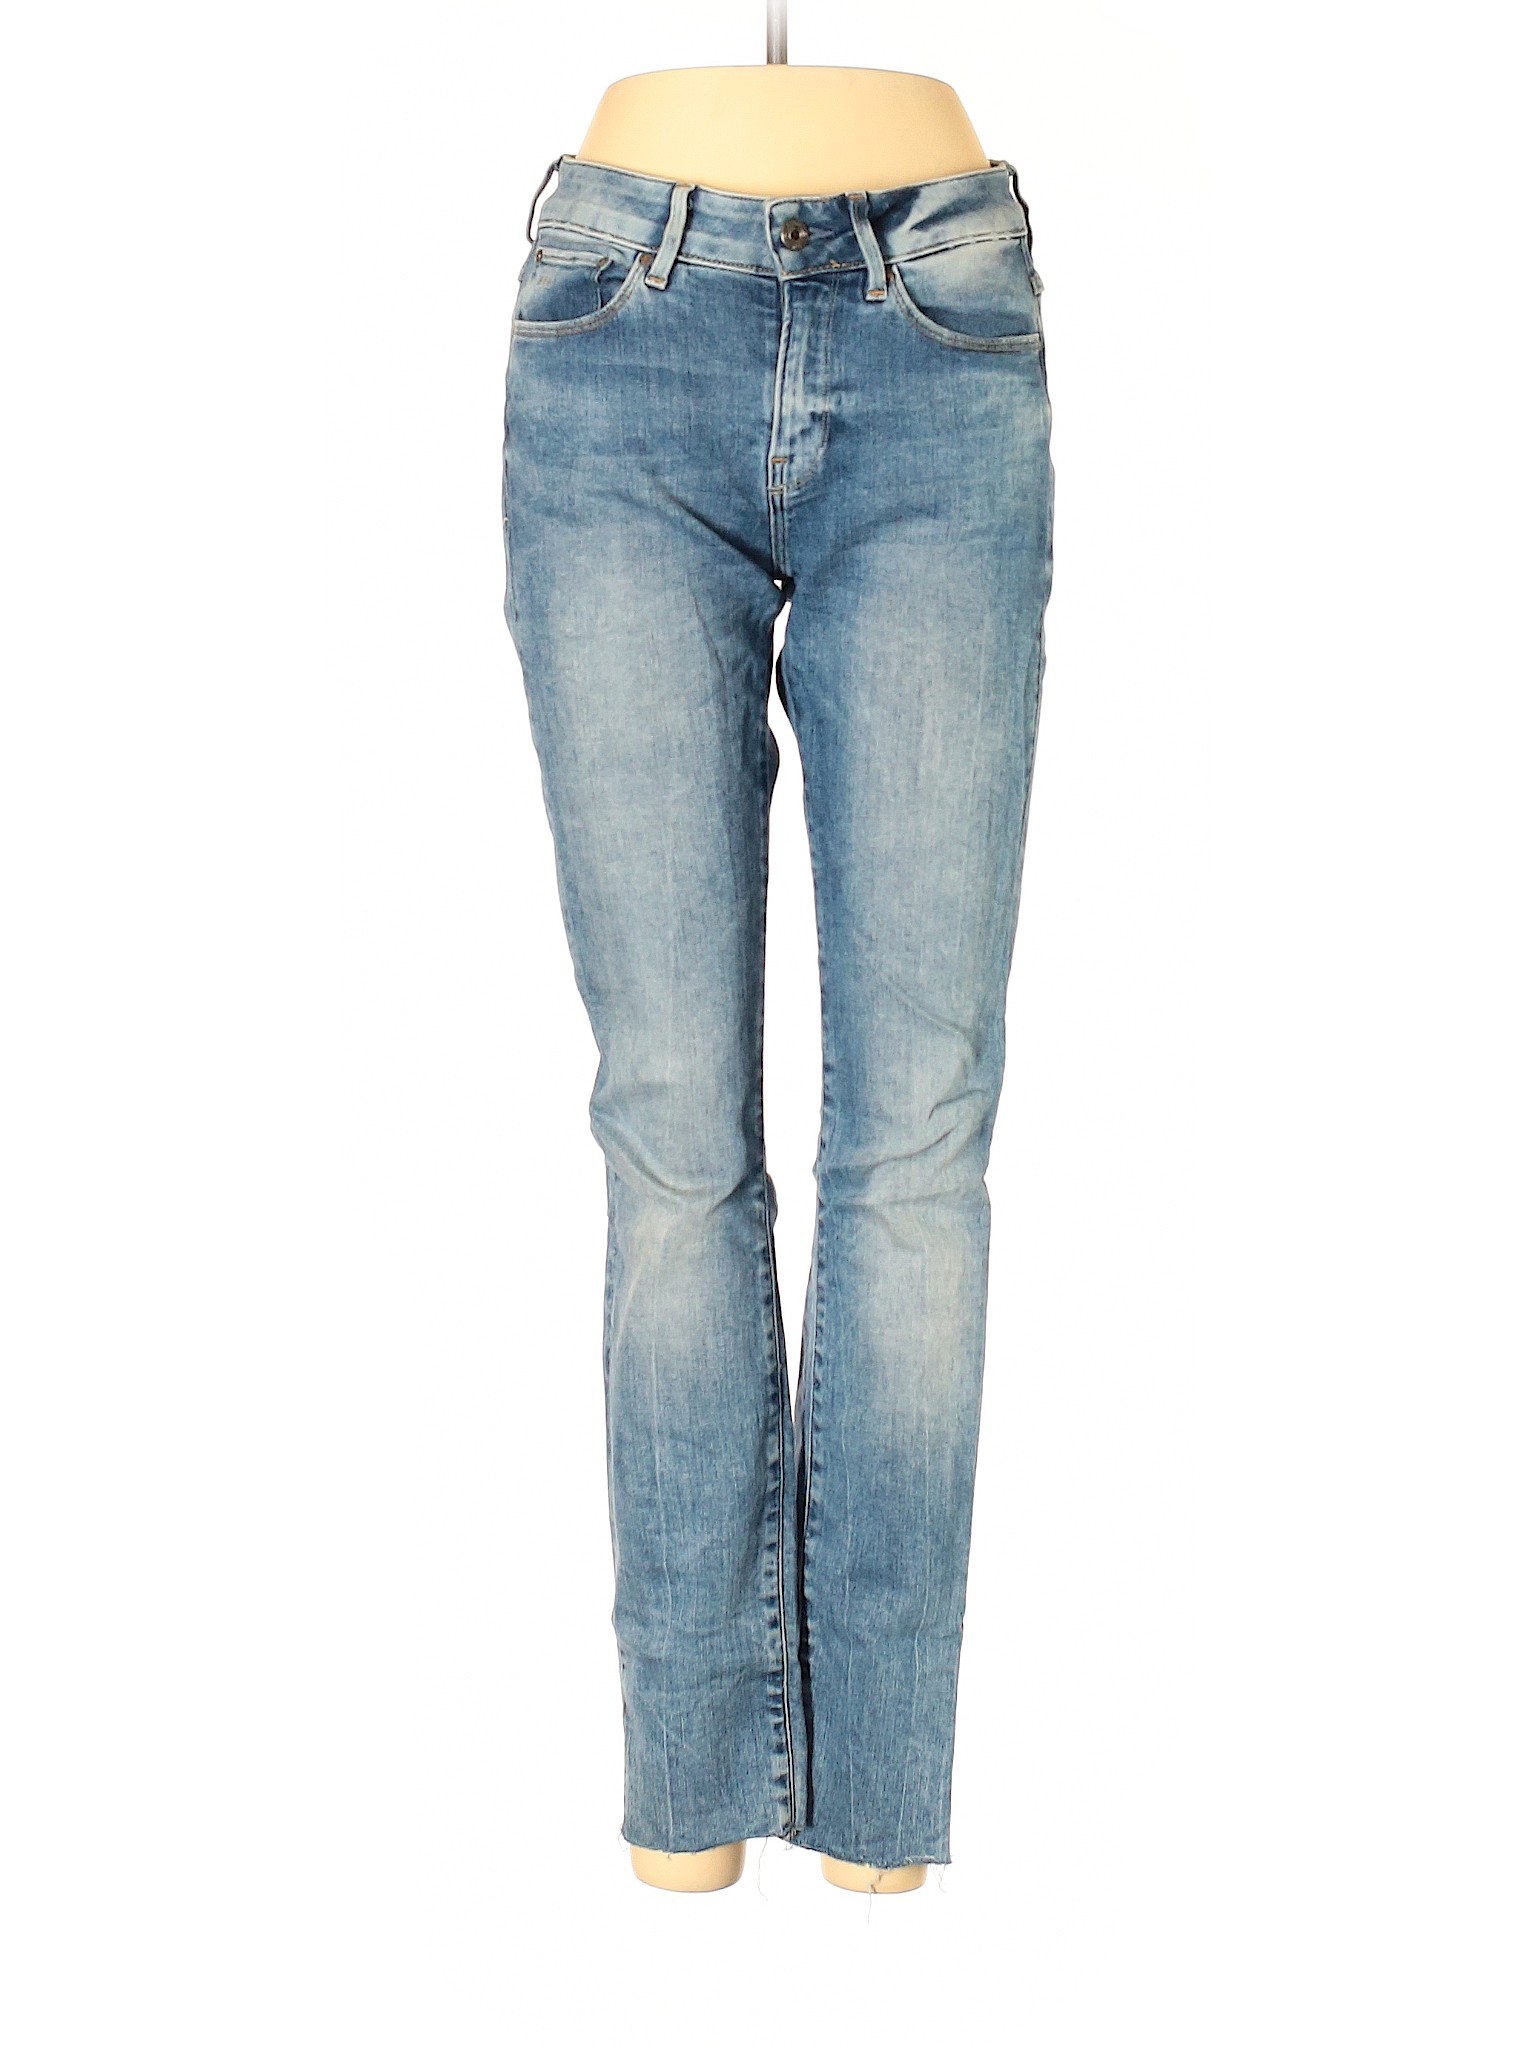 G-Star Women Blue Jeans 27W | eBay